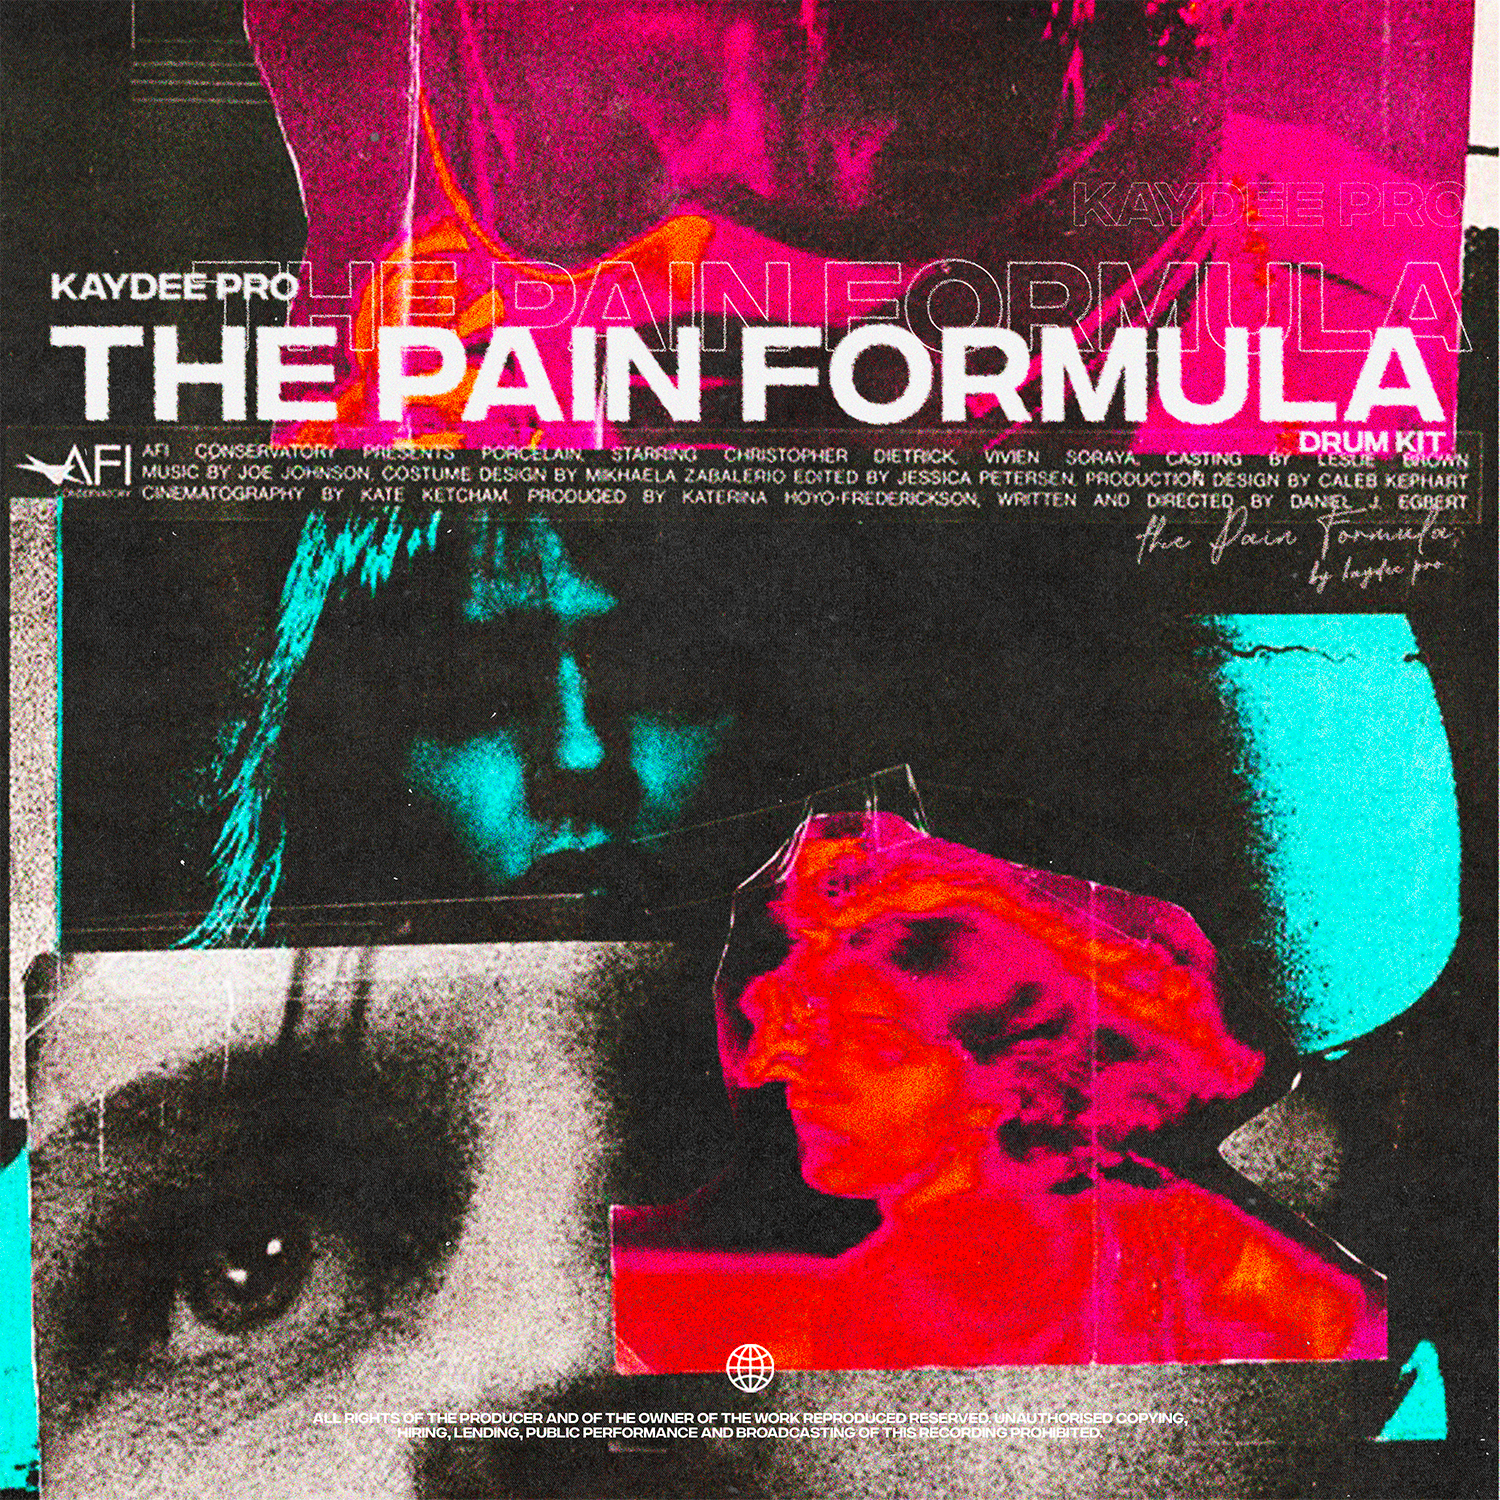 The Pain Formula [Drumkit]